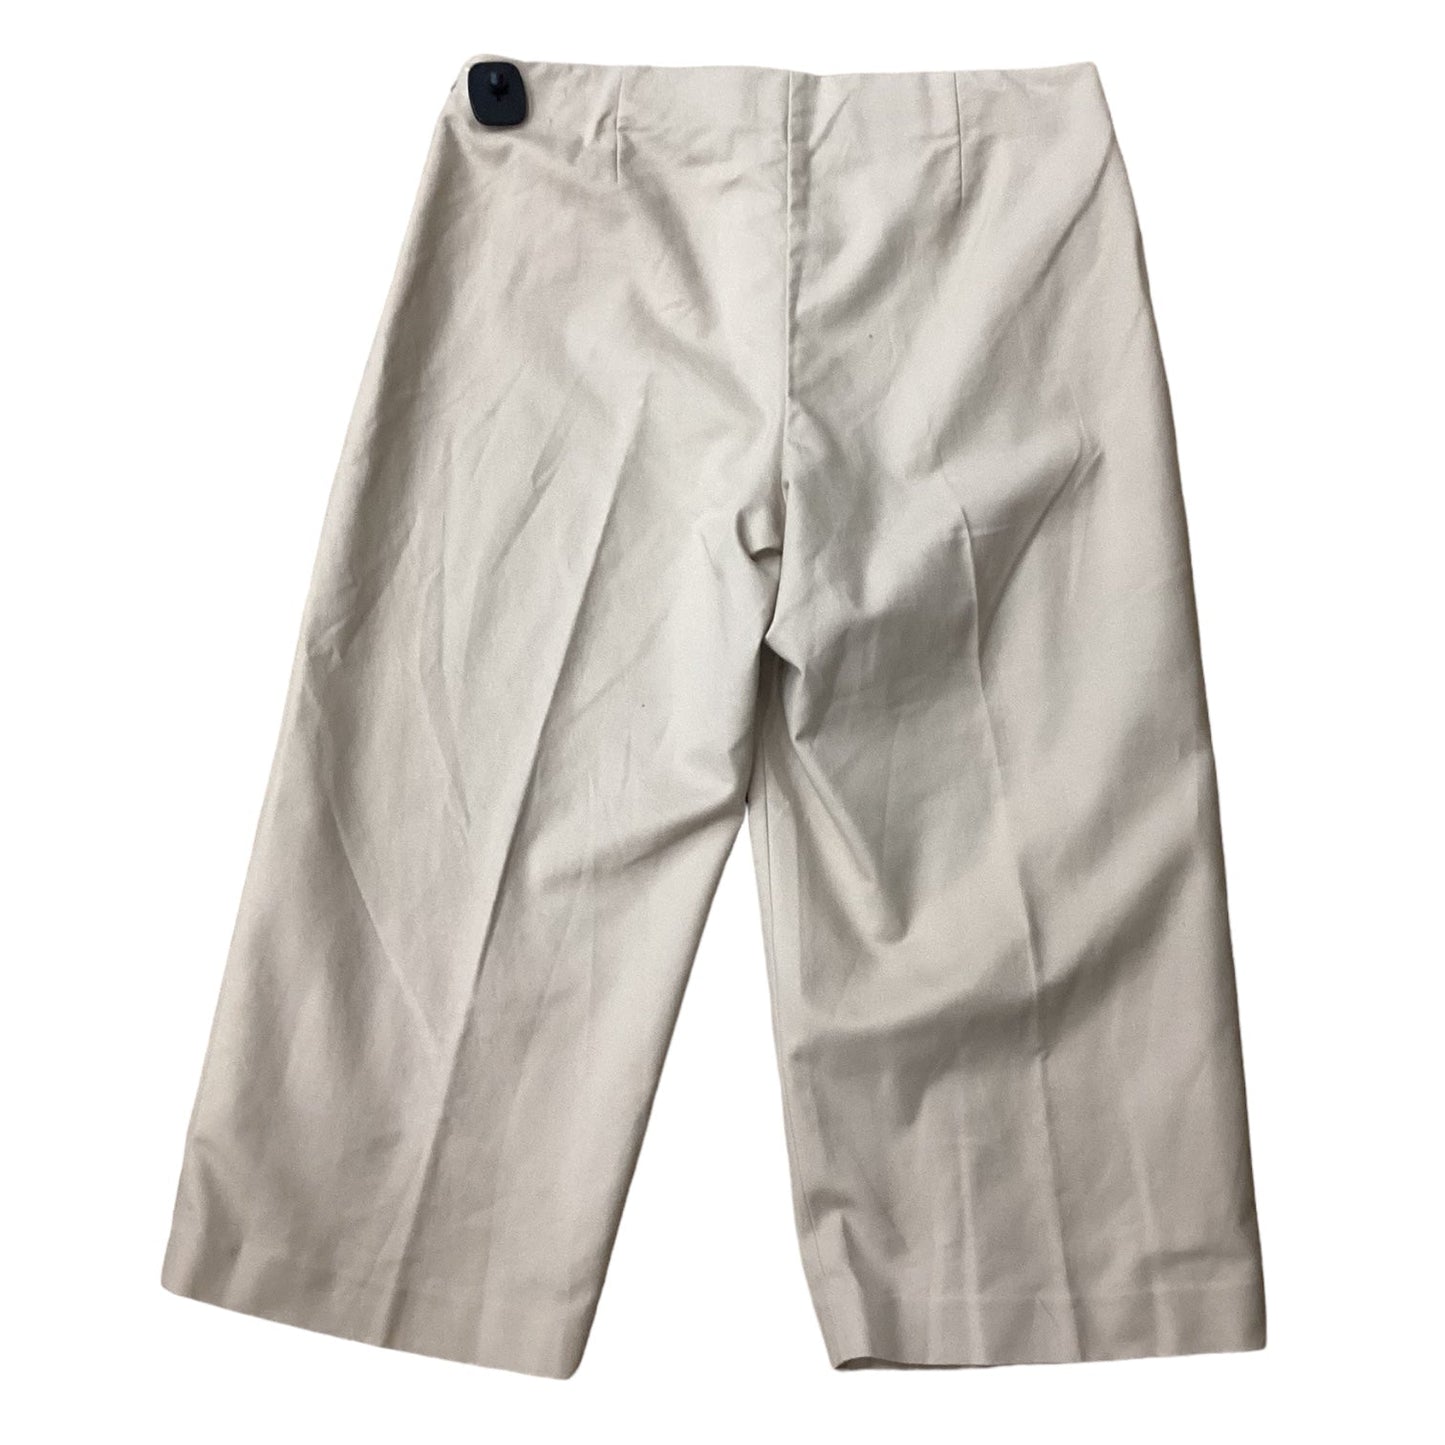 Tan Pants Cropped Ralph Lauren, Size 16